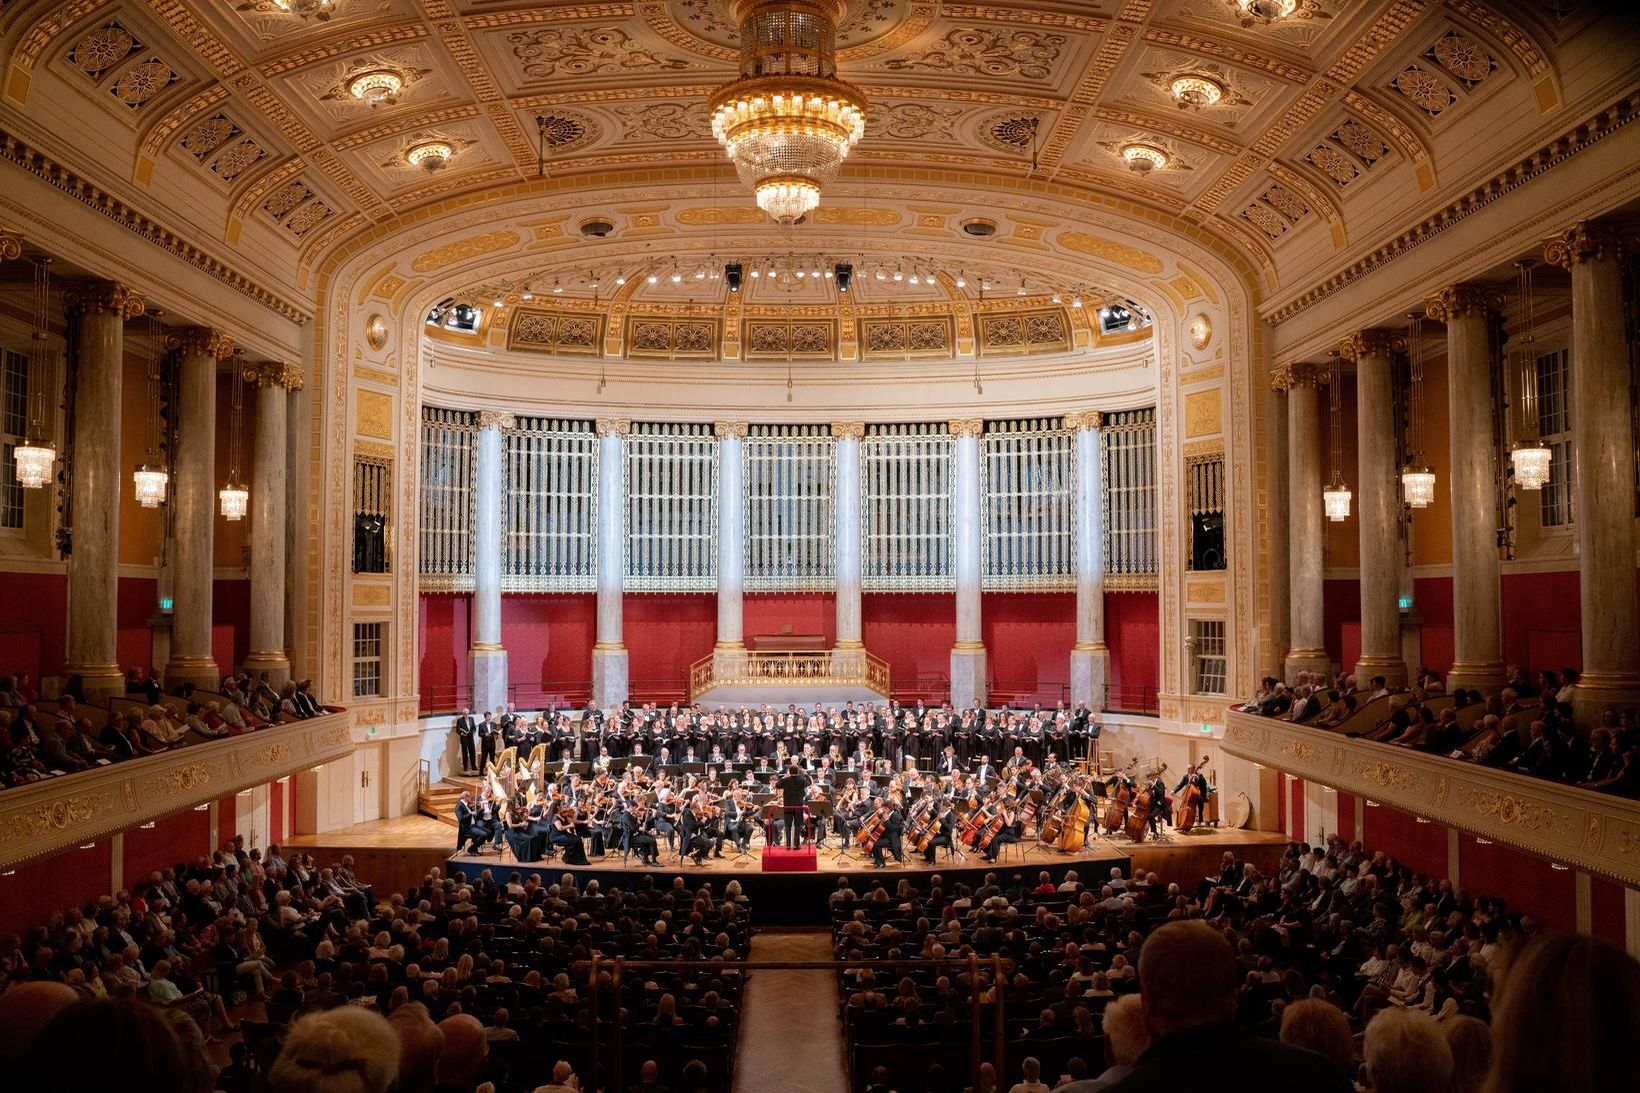 Tónlistarhúsið Wiener Konzerthaus í Vín.